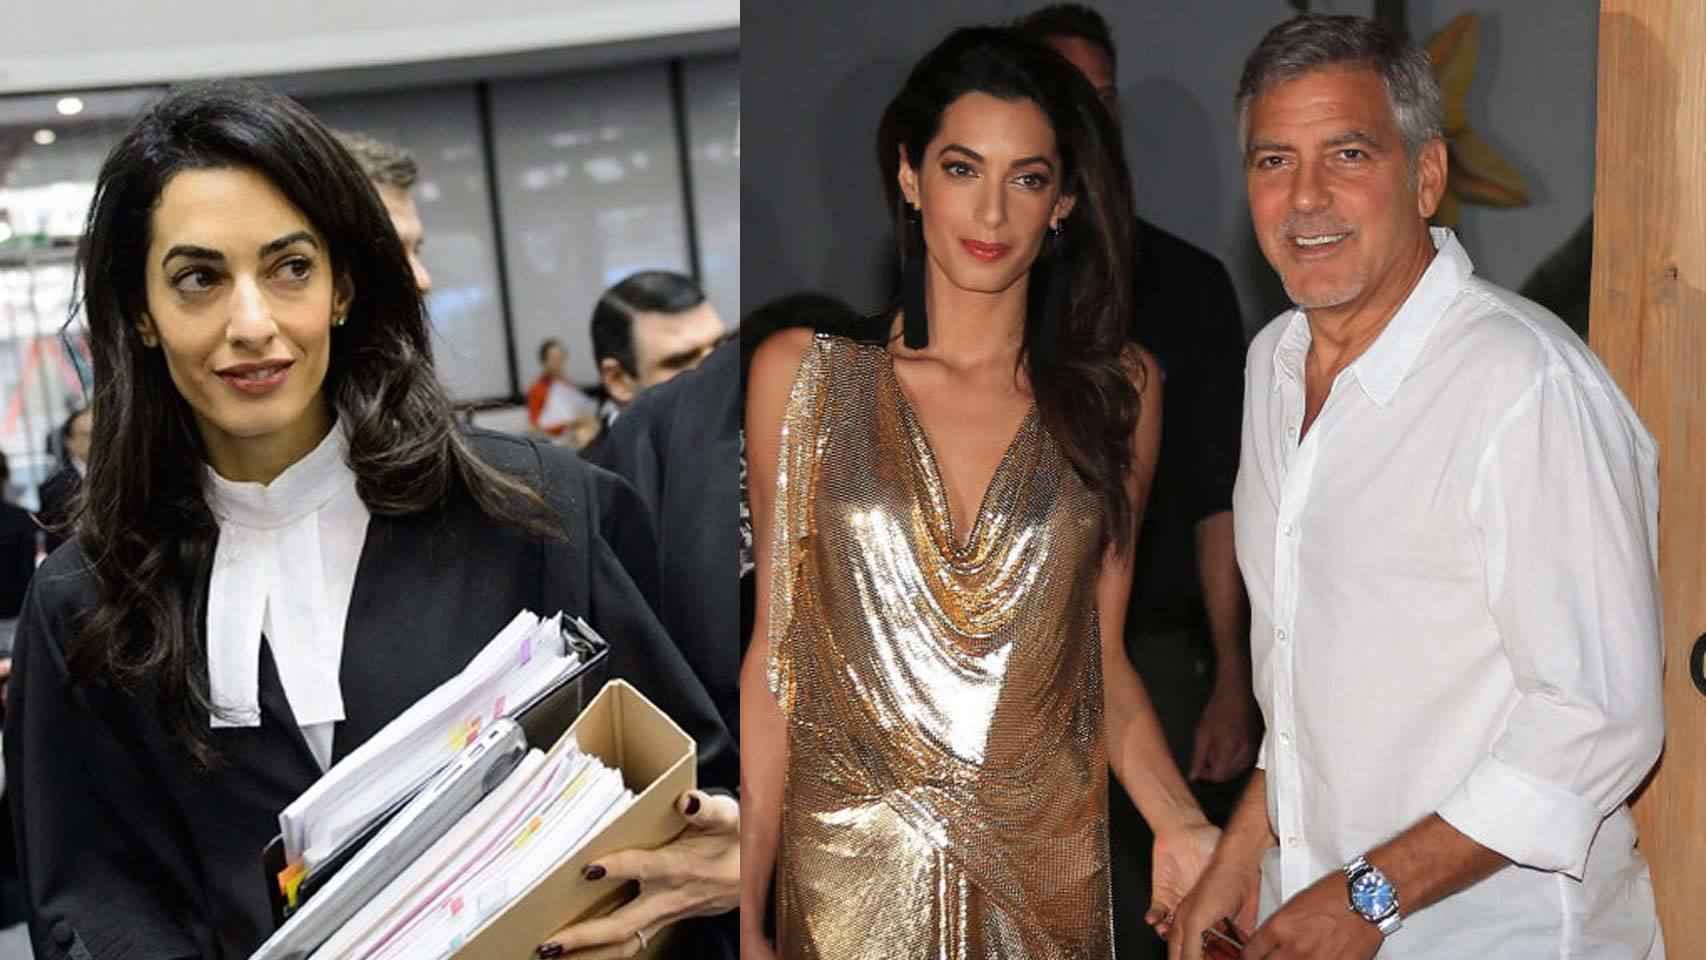 Amal-Clooney-abogada-Estrasburgo-Ibiza_92750802_404245_1706x960.jpg